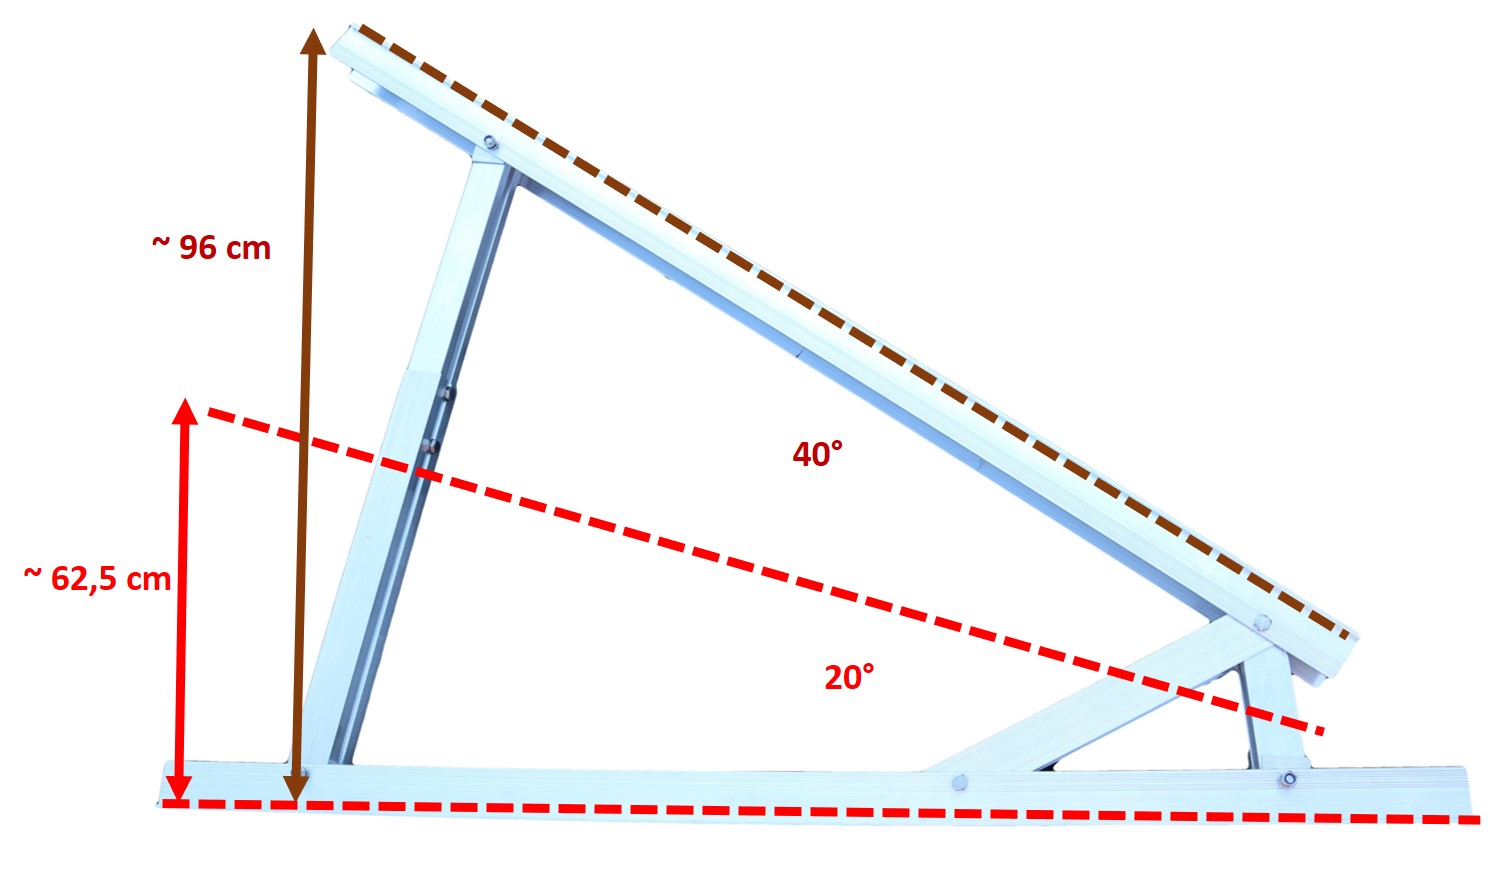 Vario Dreieck Solar Aufständerung professional 20° - 40° Hochkant waagerecht PV